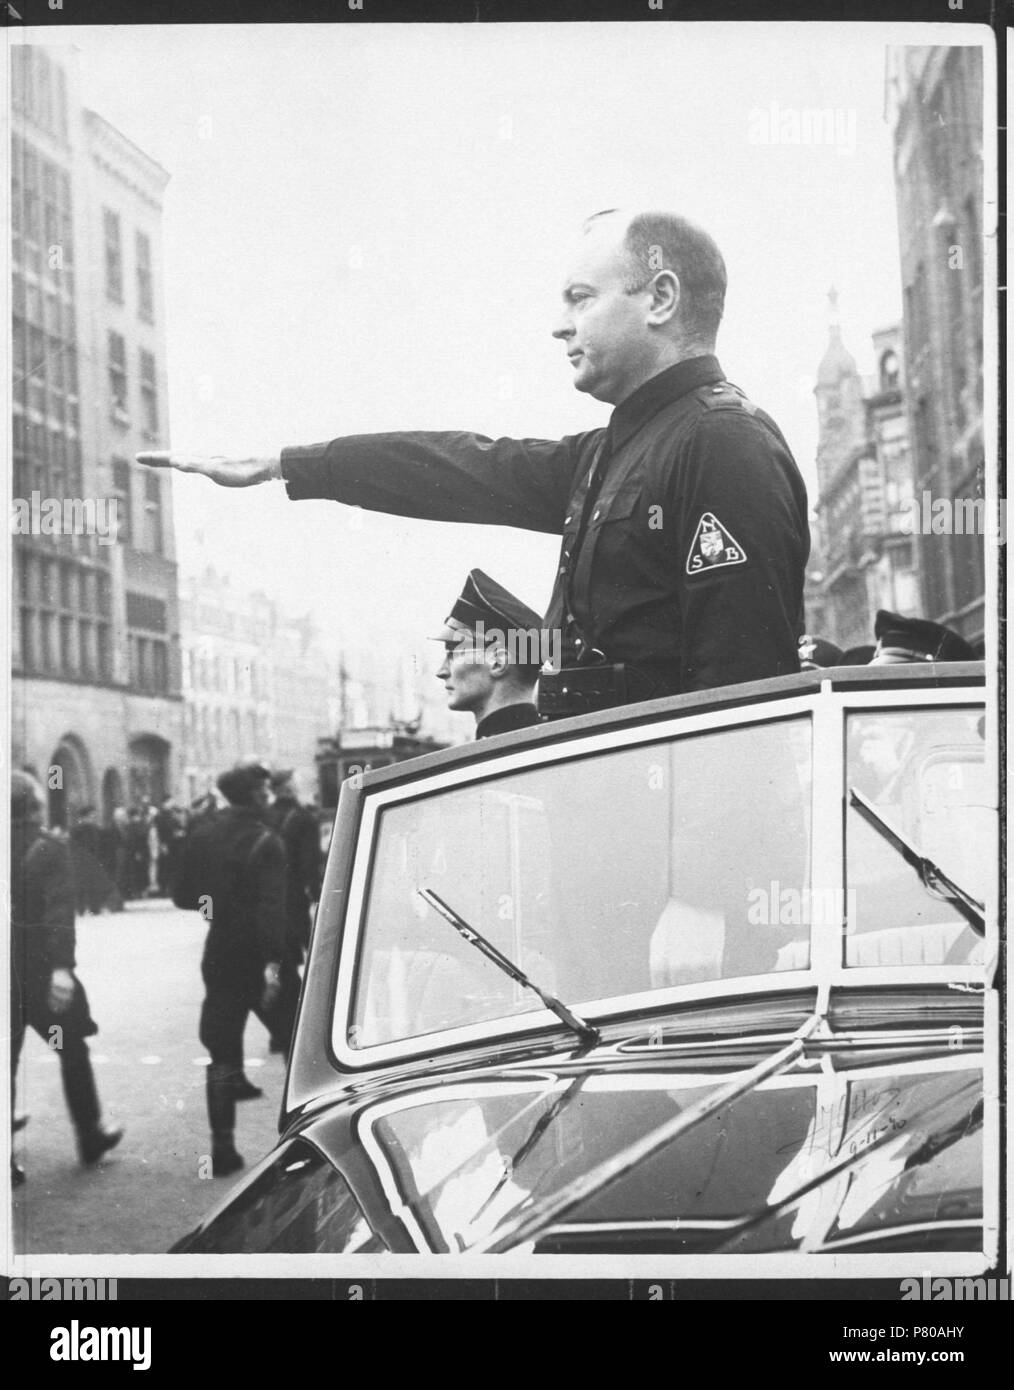 . Parade Mussert. Nederlands: Mussert bij parade richting het Rokin te Amsterdam. Deze foto is afkomstig uit het archief van de Fotodienst der NSB. 9 November 1941 300 Parade Mussert - Fotodienst der NSB - NIOD - 87360 Stock Photo